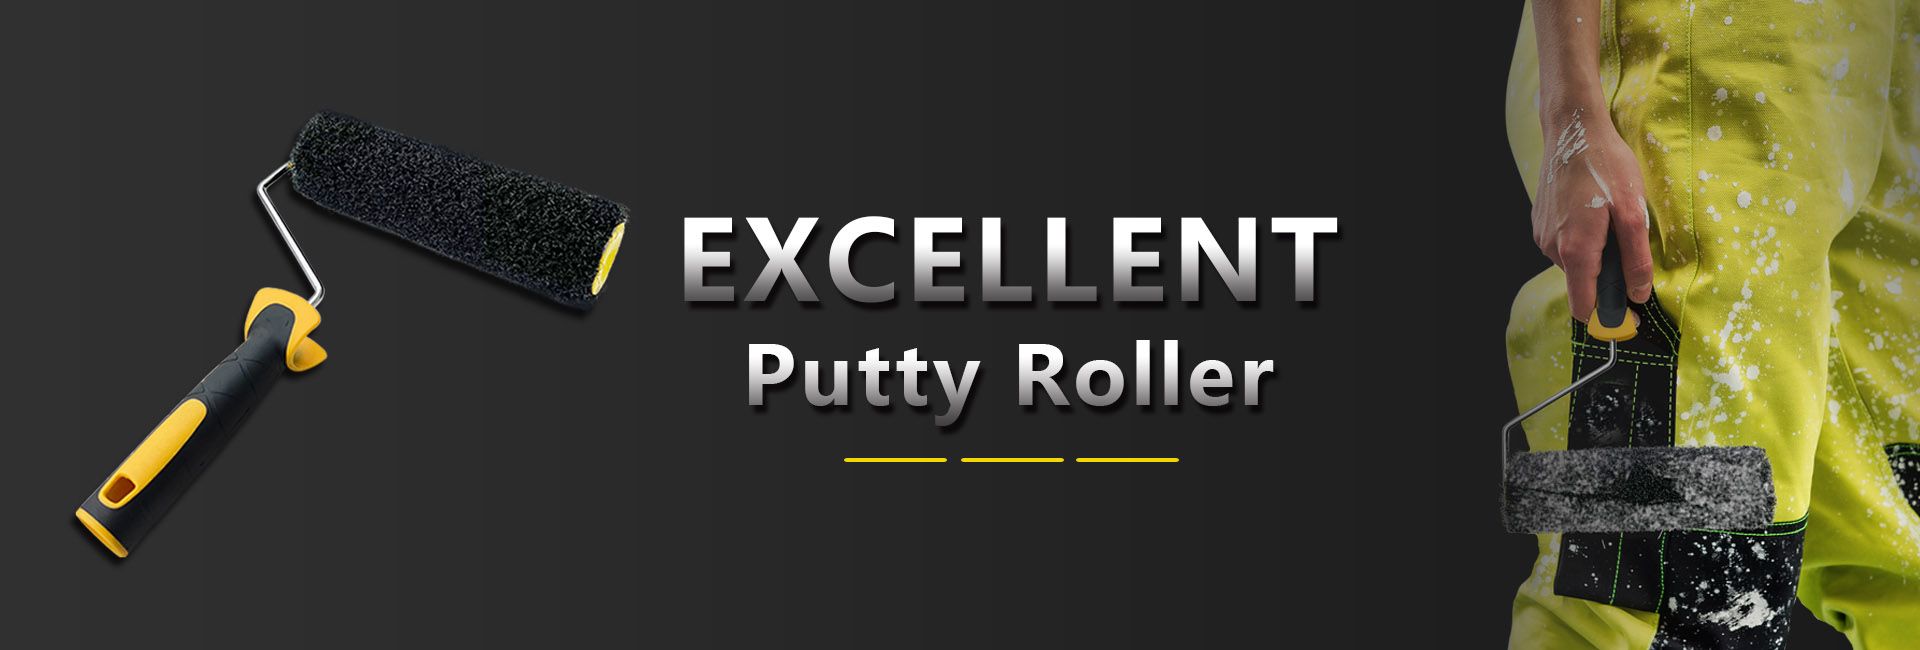 putty roller